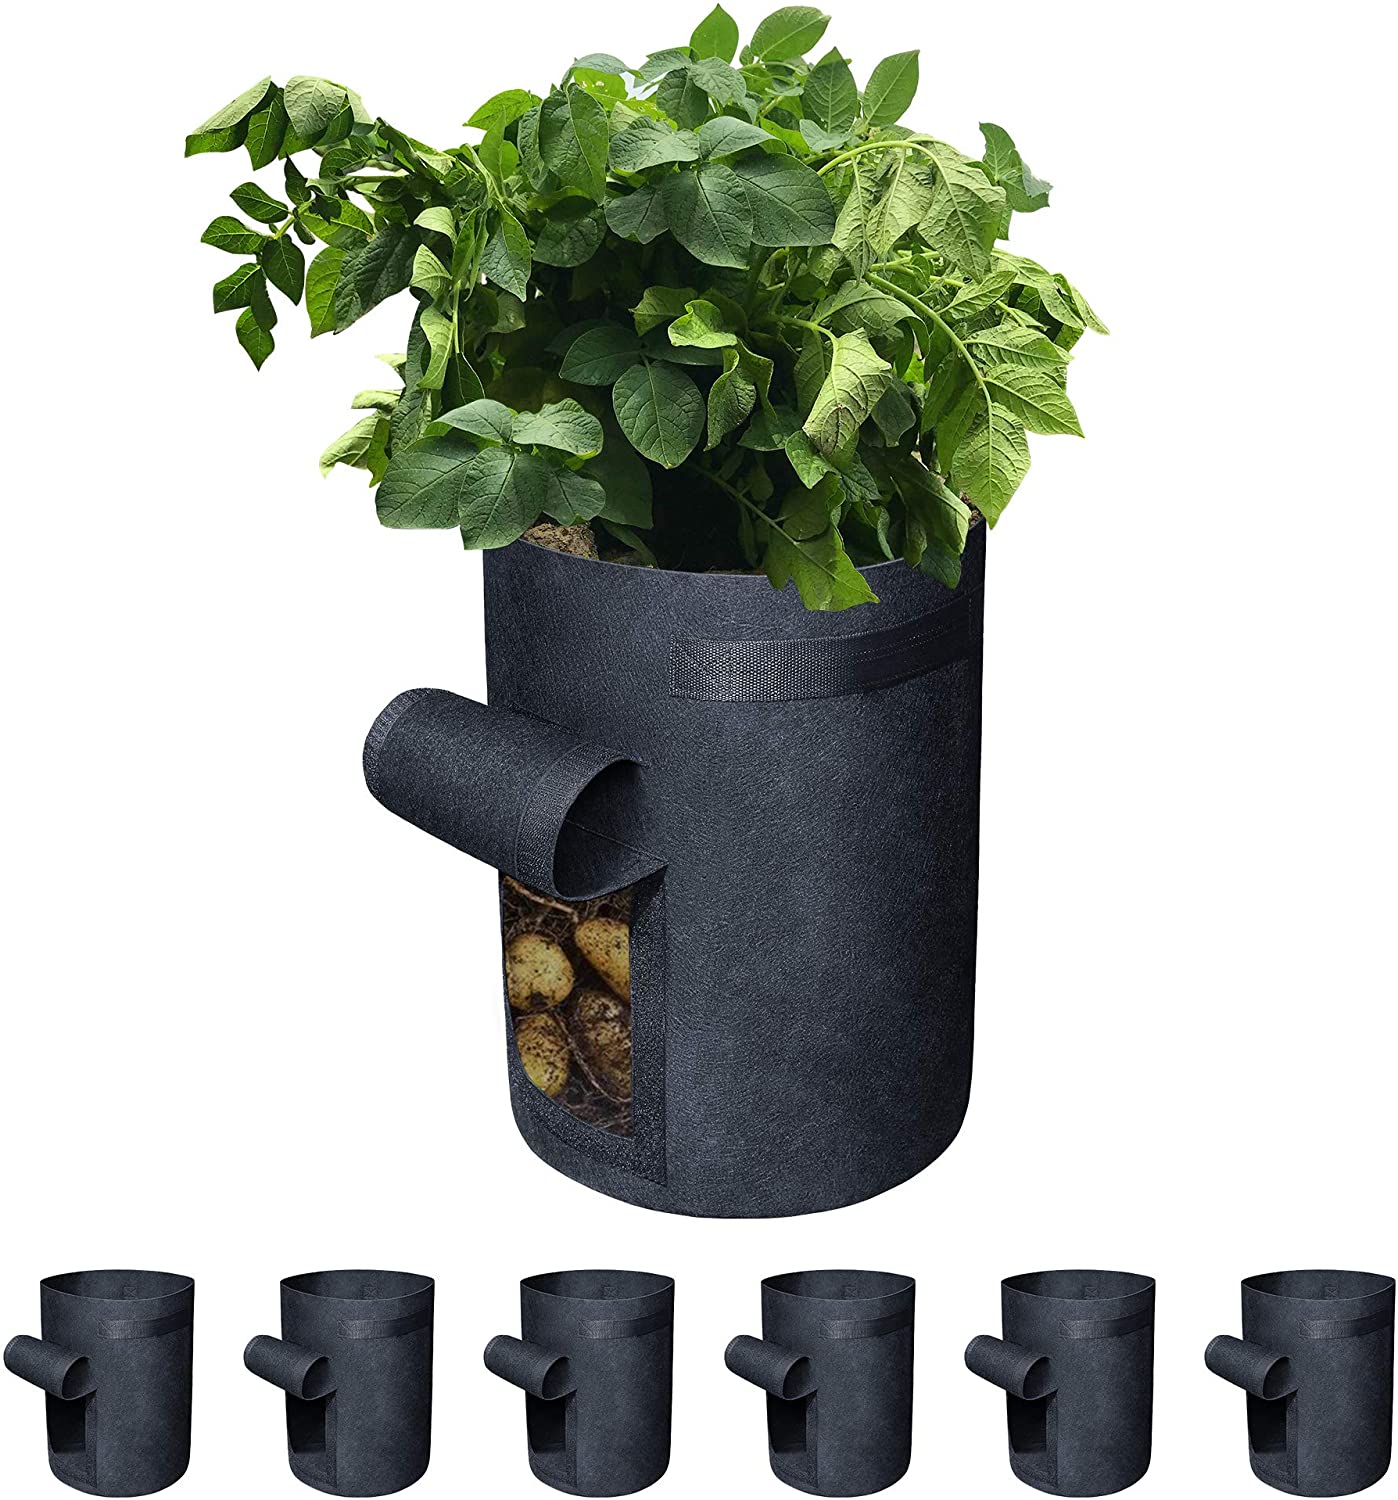 Gardzen 10&20 Packs Garden Pots, Fabric Plastic Plant Pots